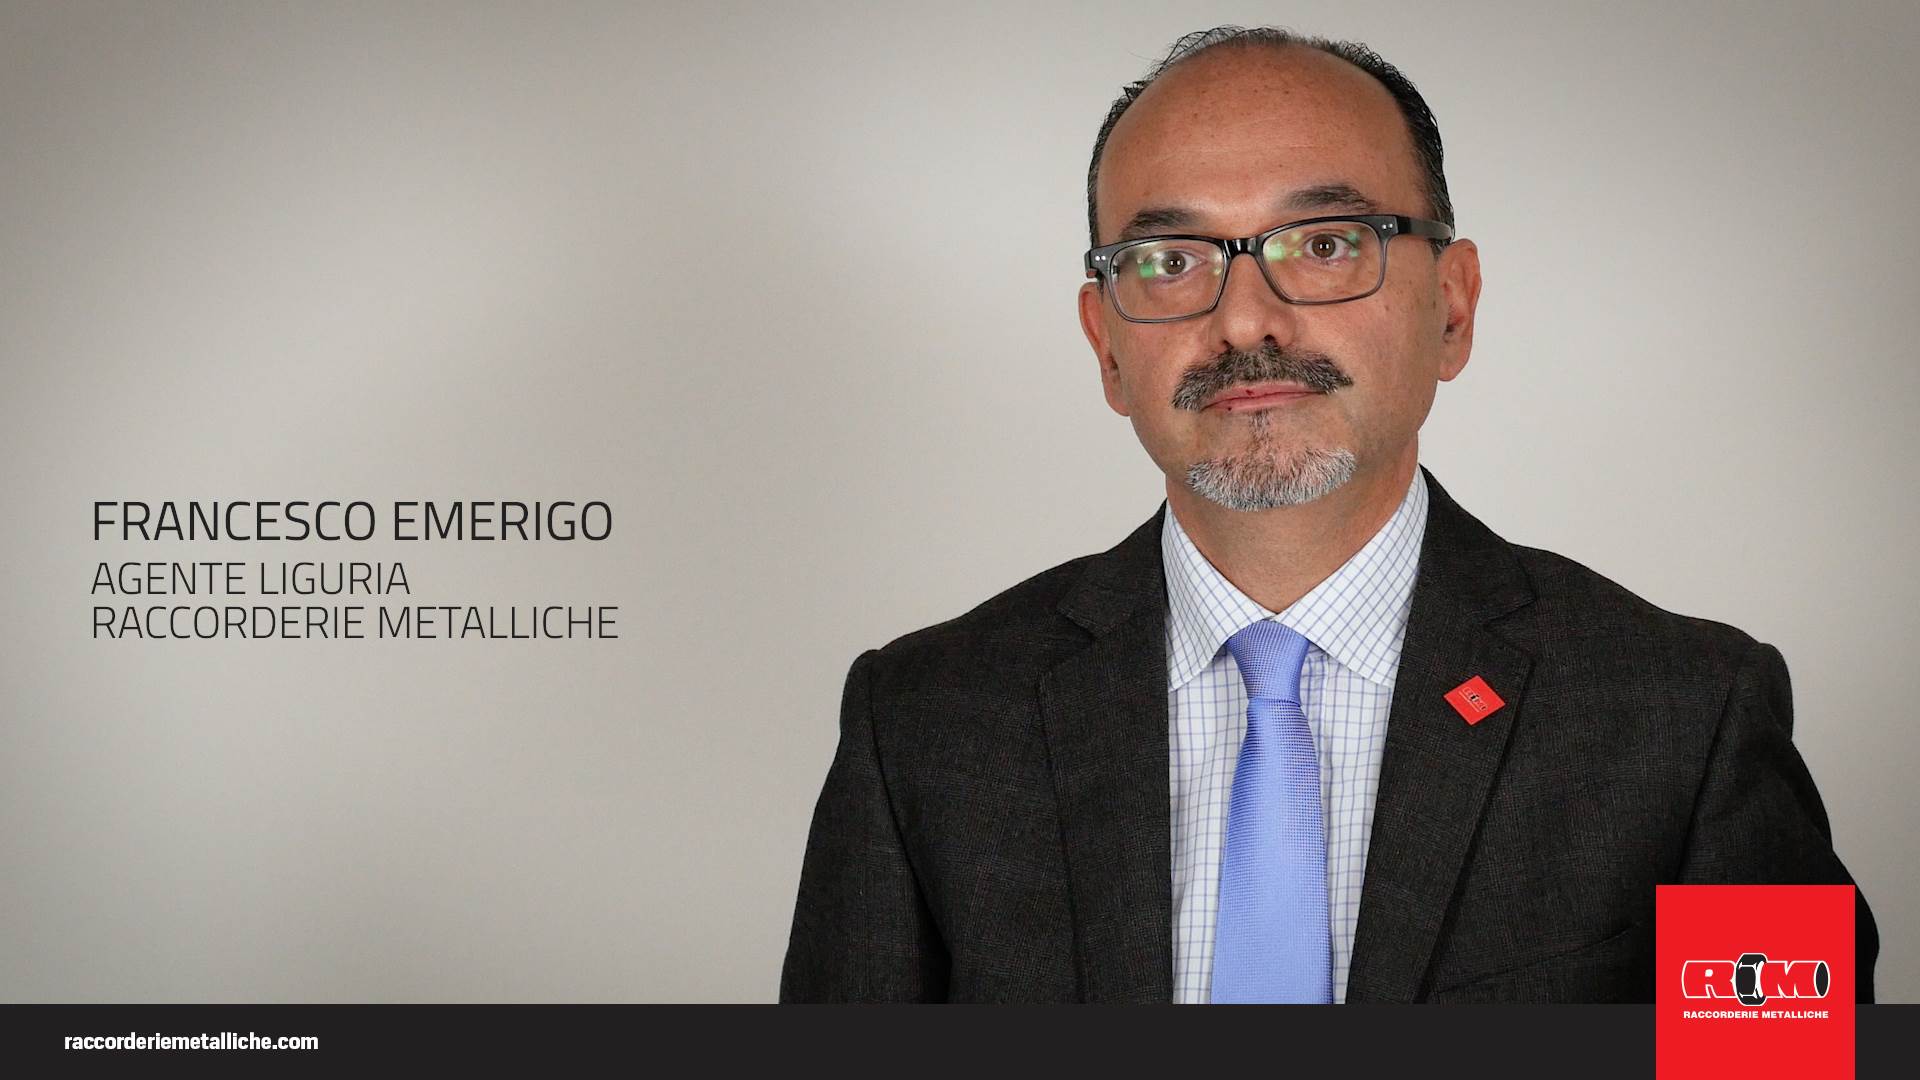 Francesco Emerigo - Agente Liguria